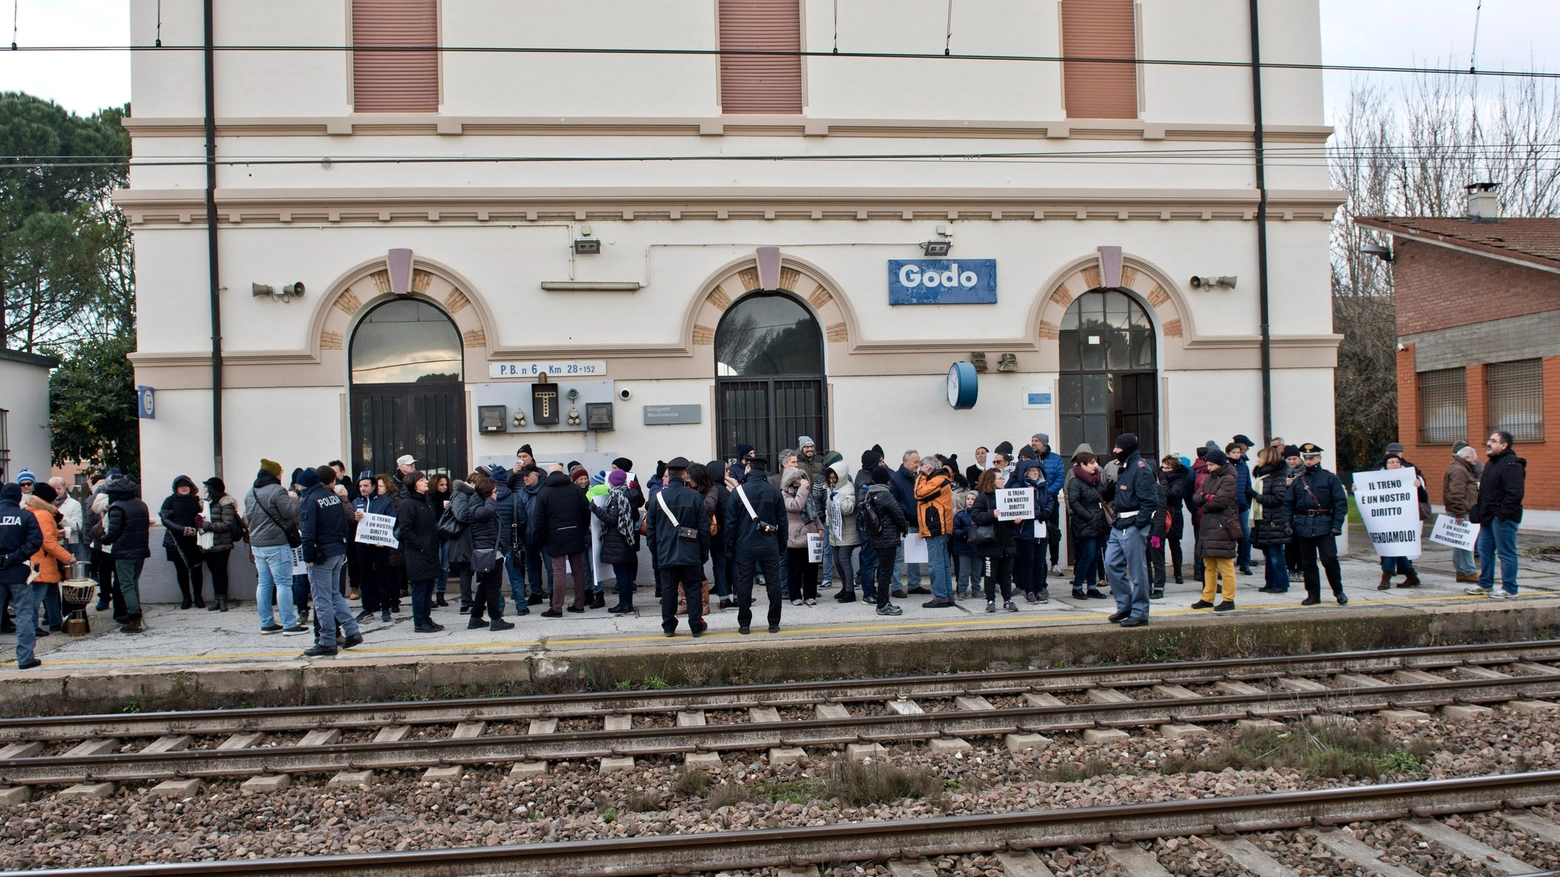 Nuovo orario dei treni, la protesta dei pendolari di Godo. "Ridateci la stazione"